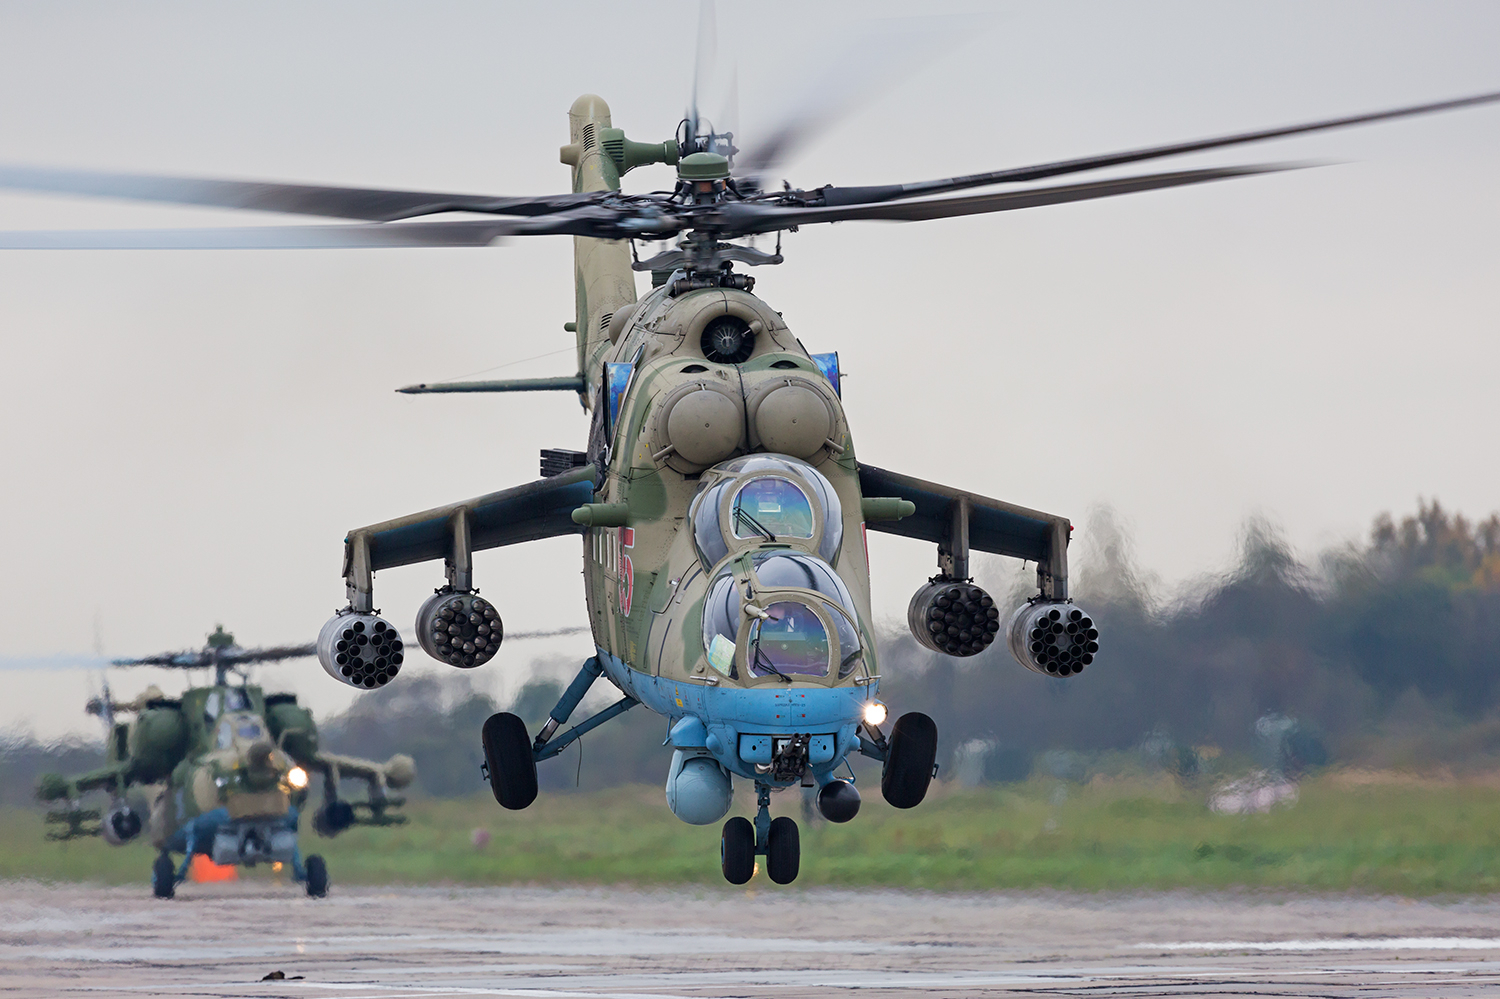 Kuva: Mi-24 kestää